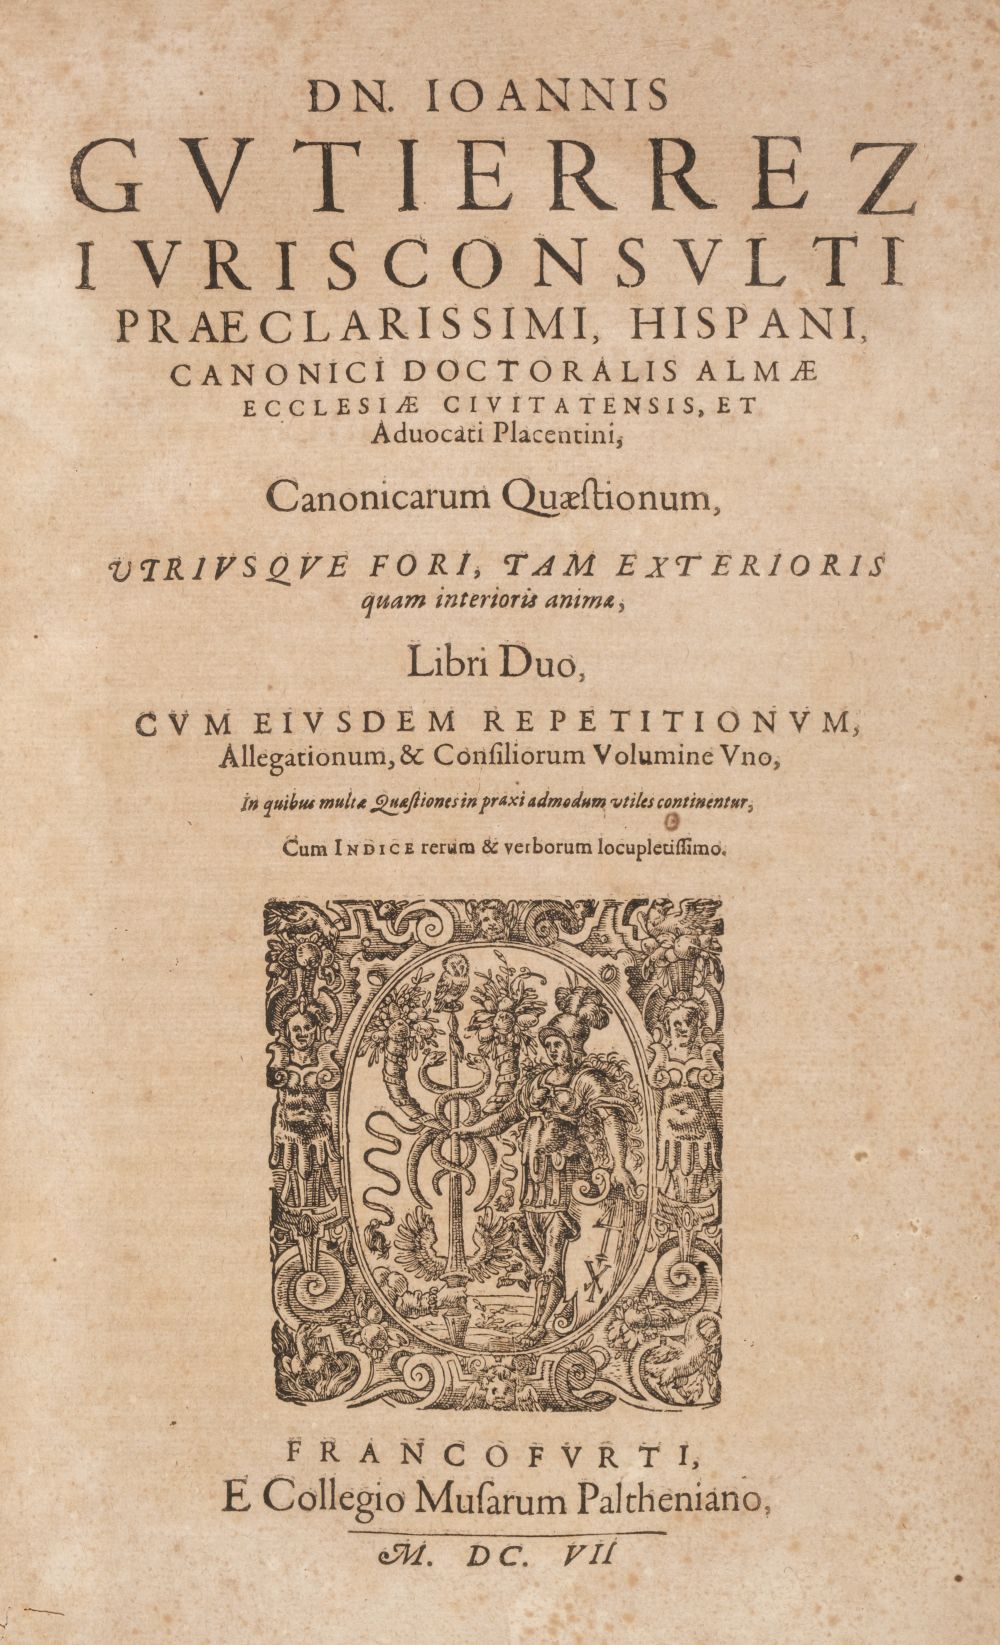 Gutierrez (Juan). Canonicarum quaestionum, 2 books in one, 1st edition, Frankfurt, 1607